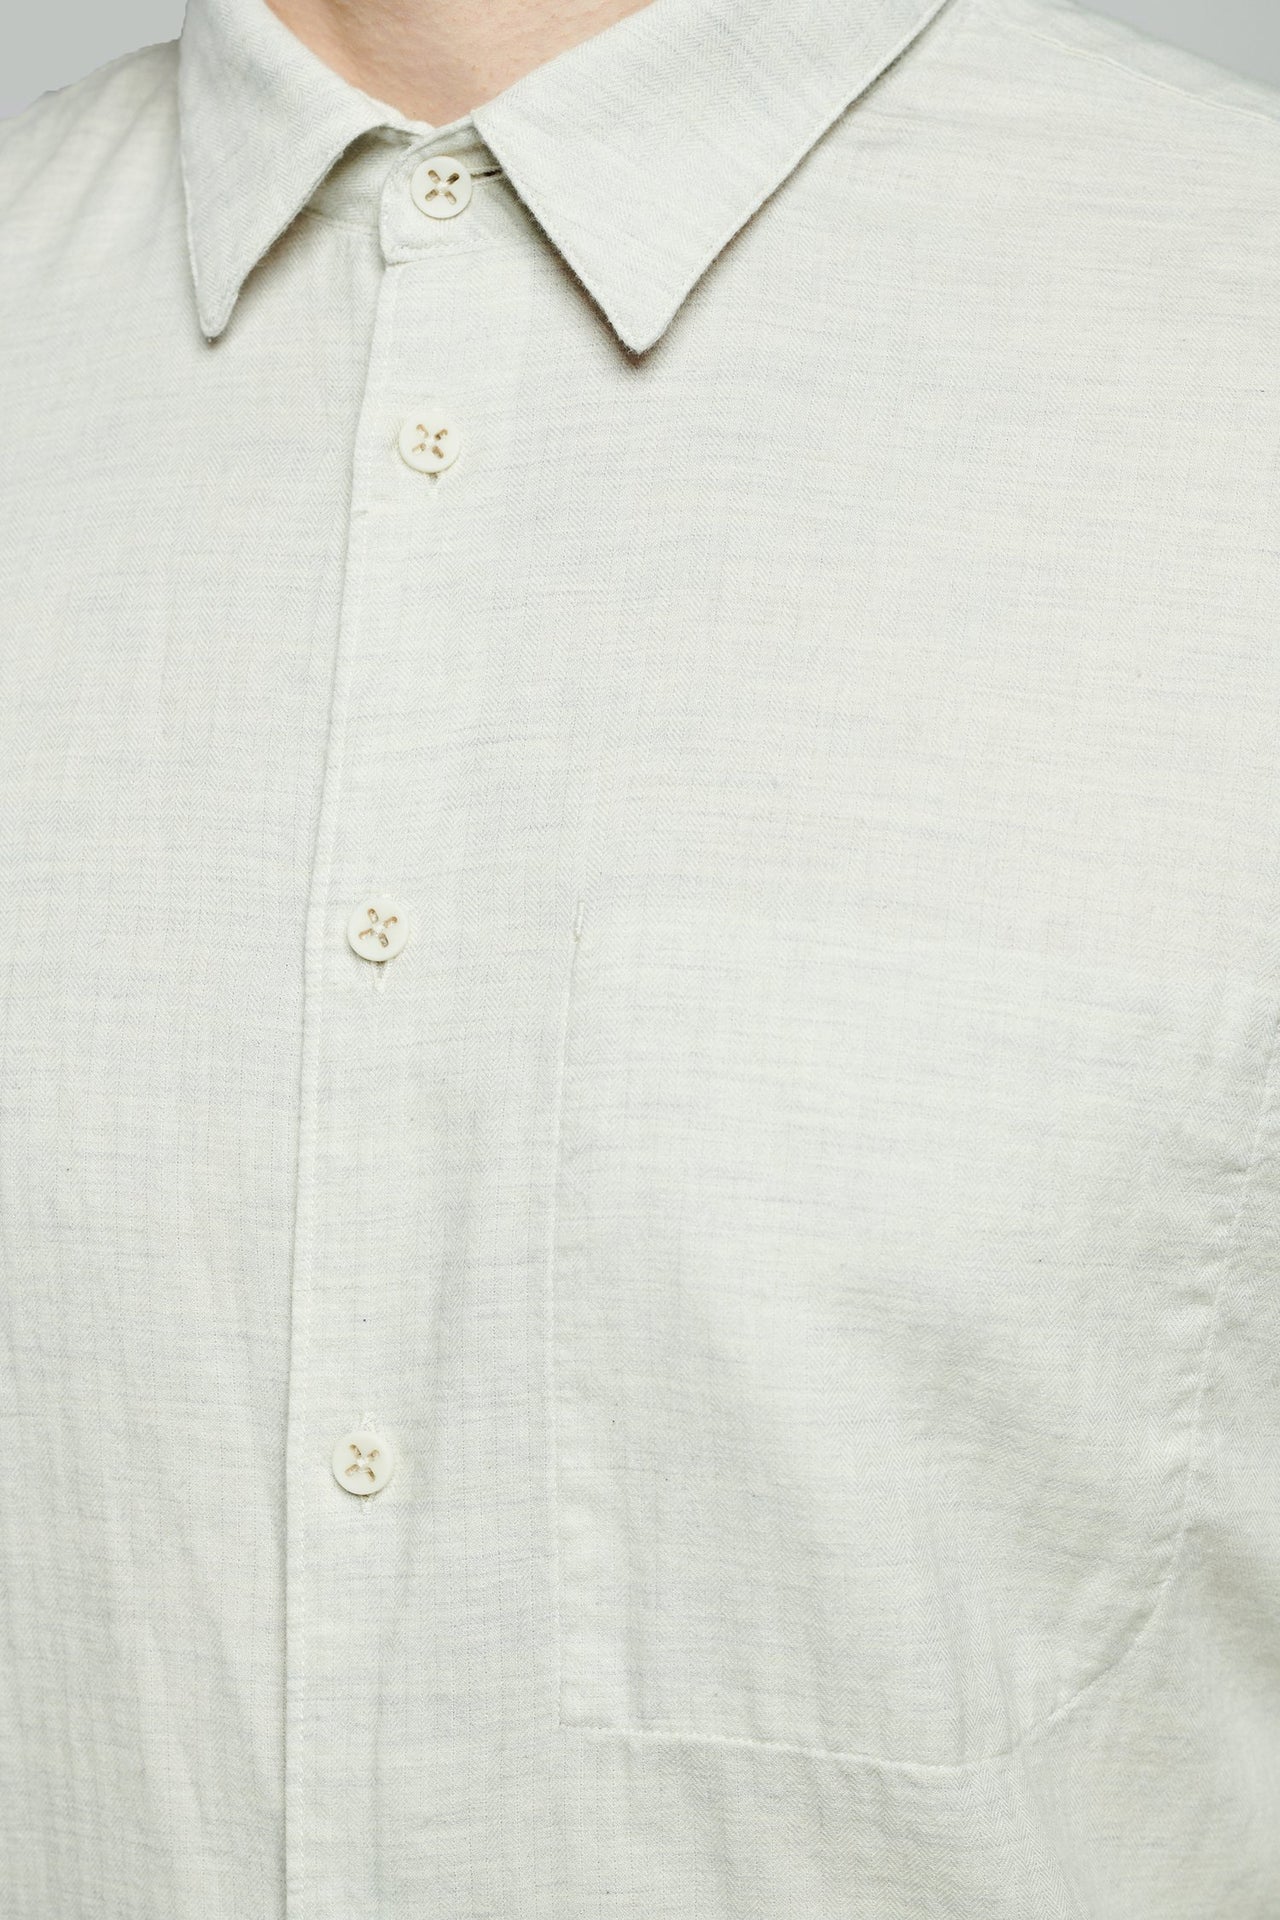 パステルブルーのフィールグッドシャツ 日本製オーガニックヘリンボーンコットン